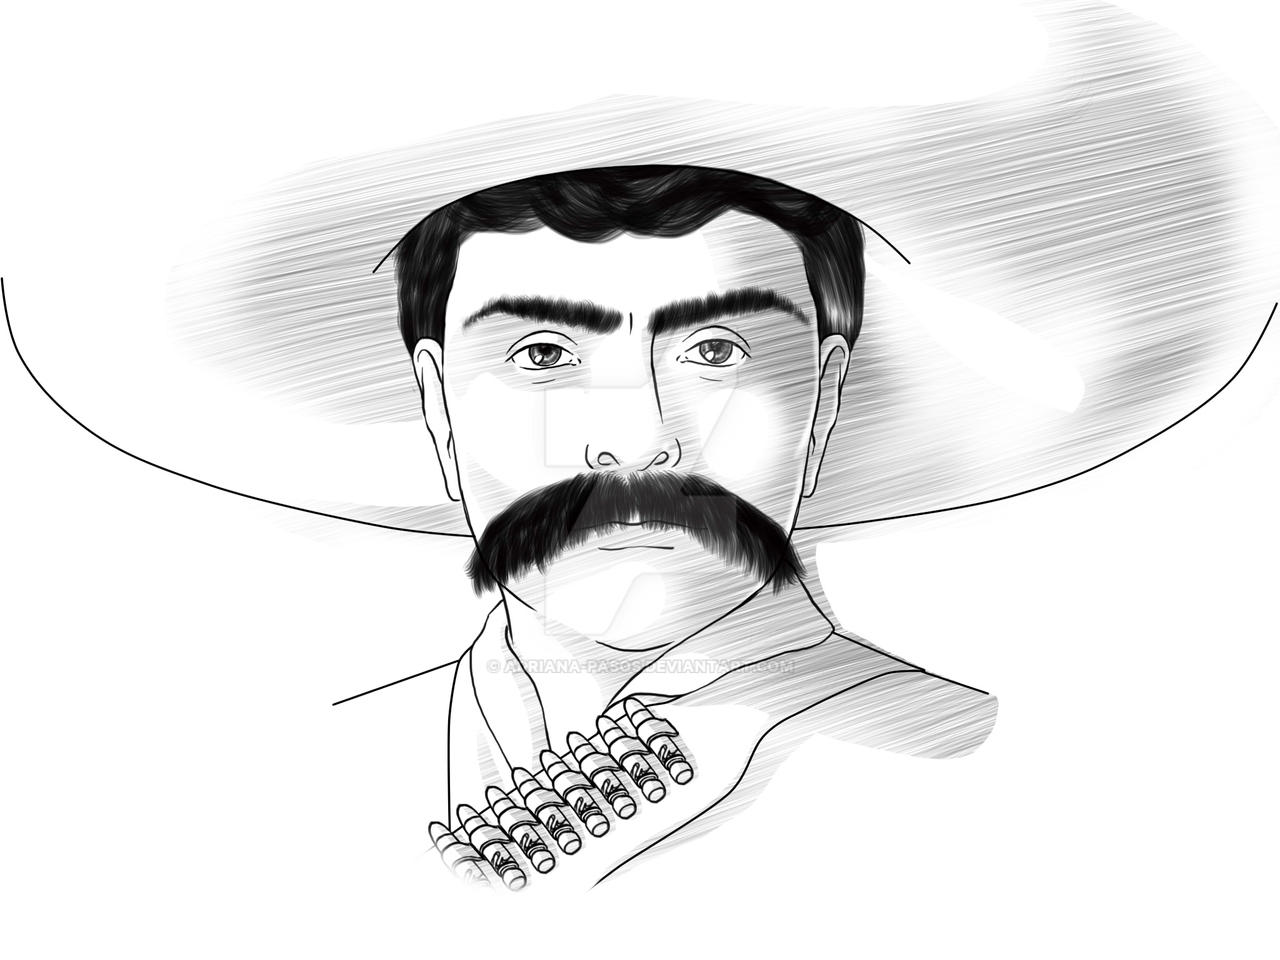 Emiliano Zapata by Adriana-Pasos on DeviantArt